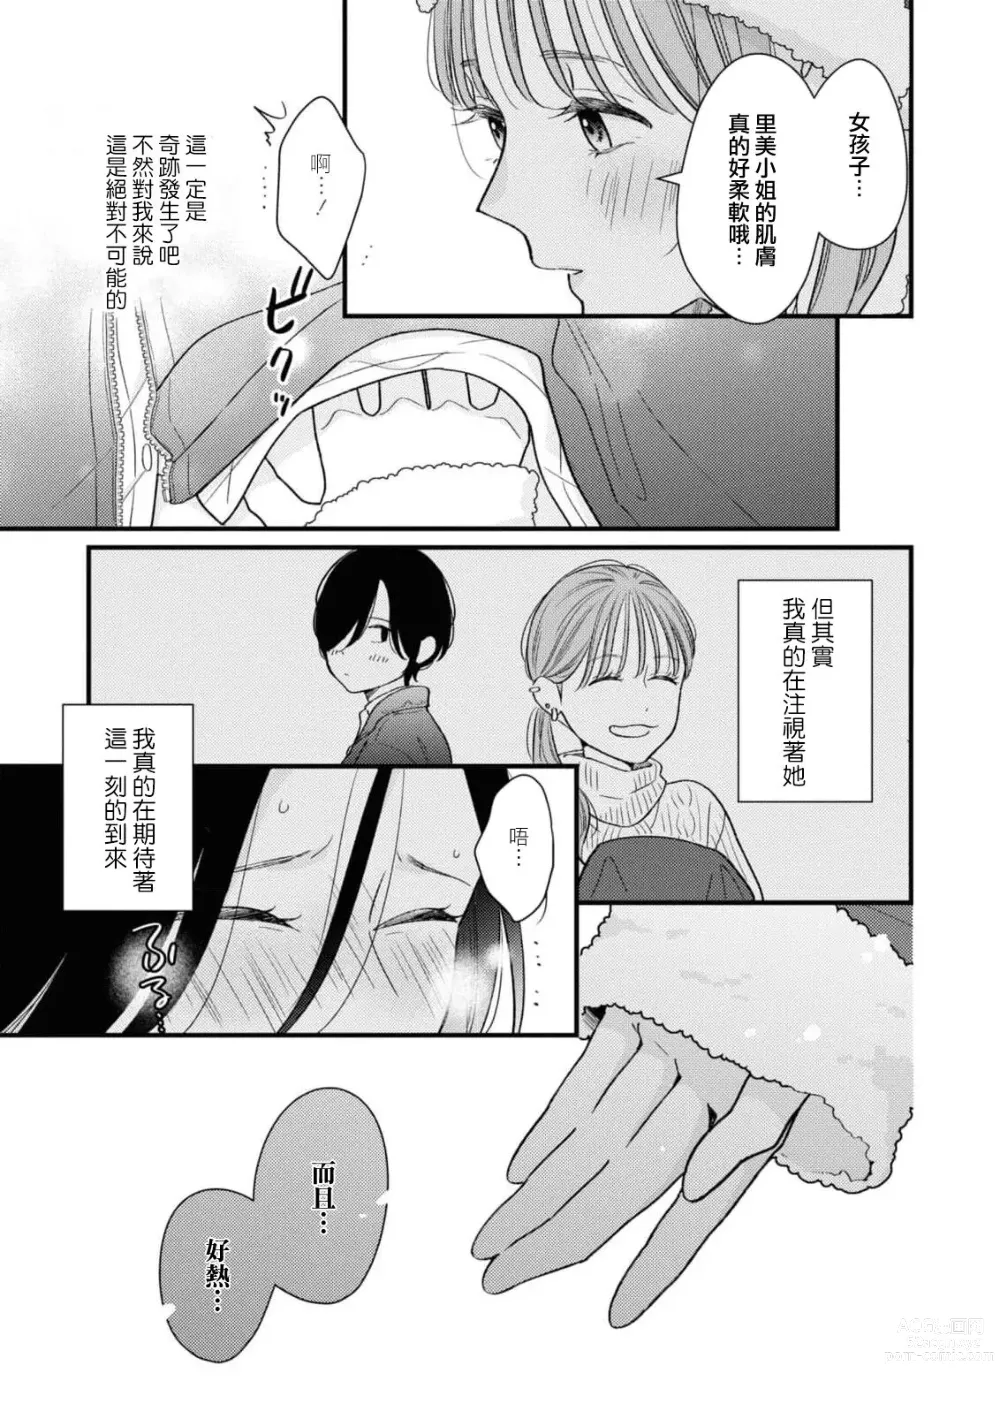 Page 13 of manga 延长30分钟的浪漫